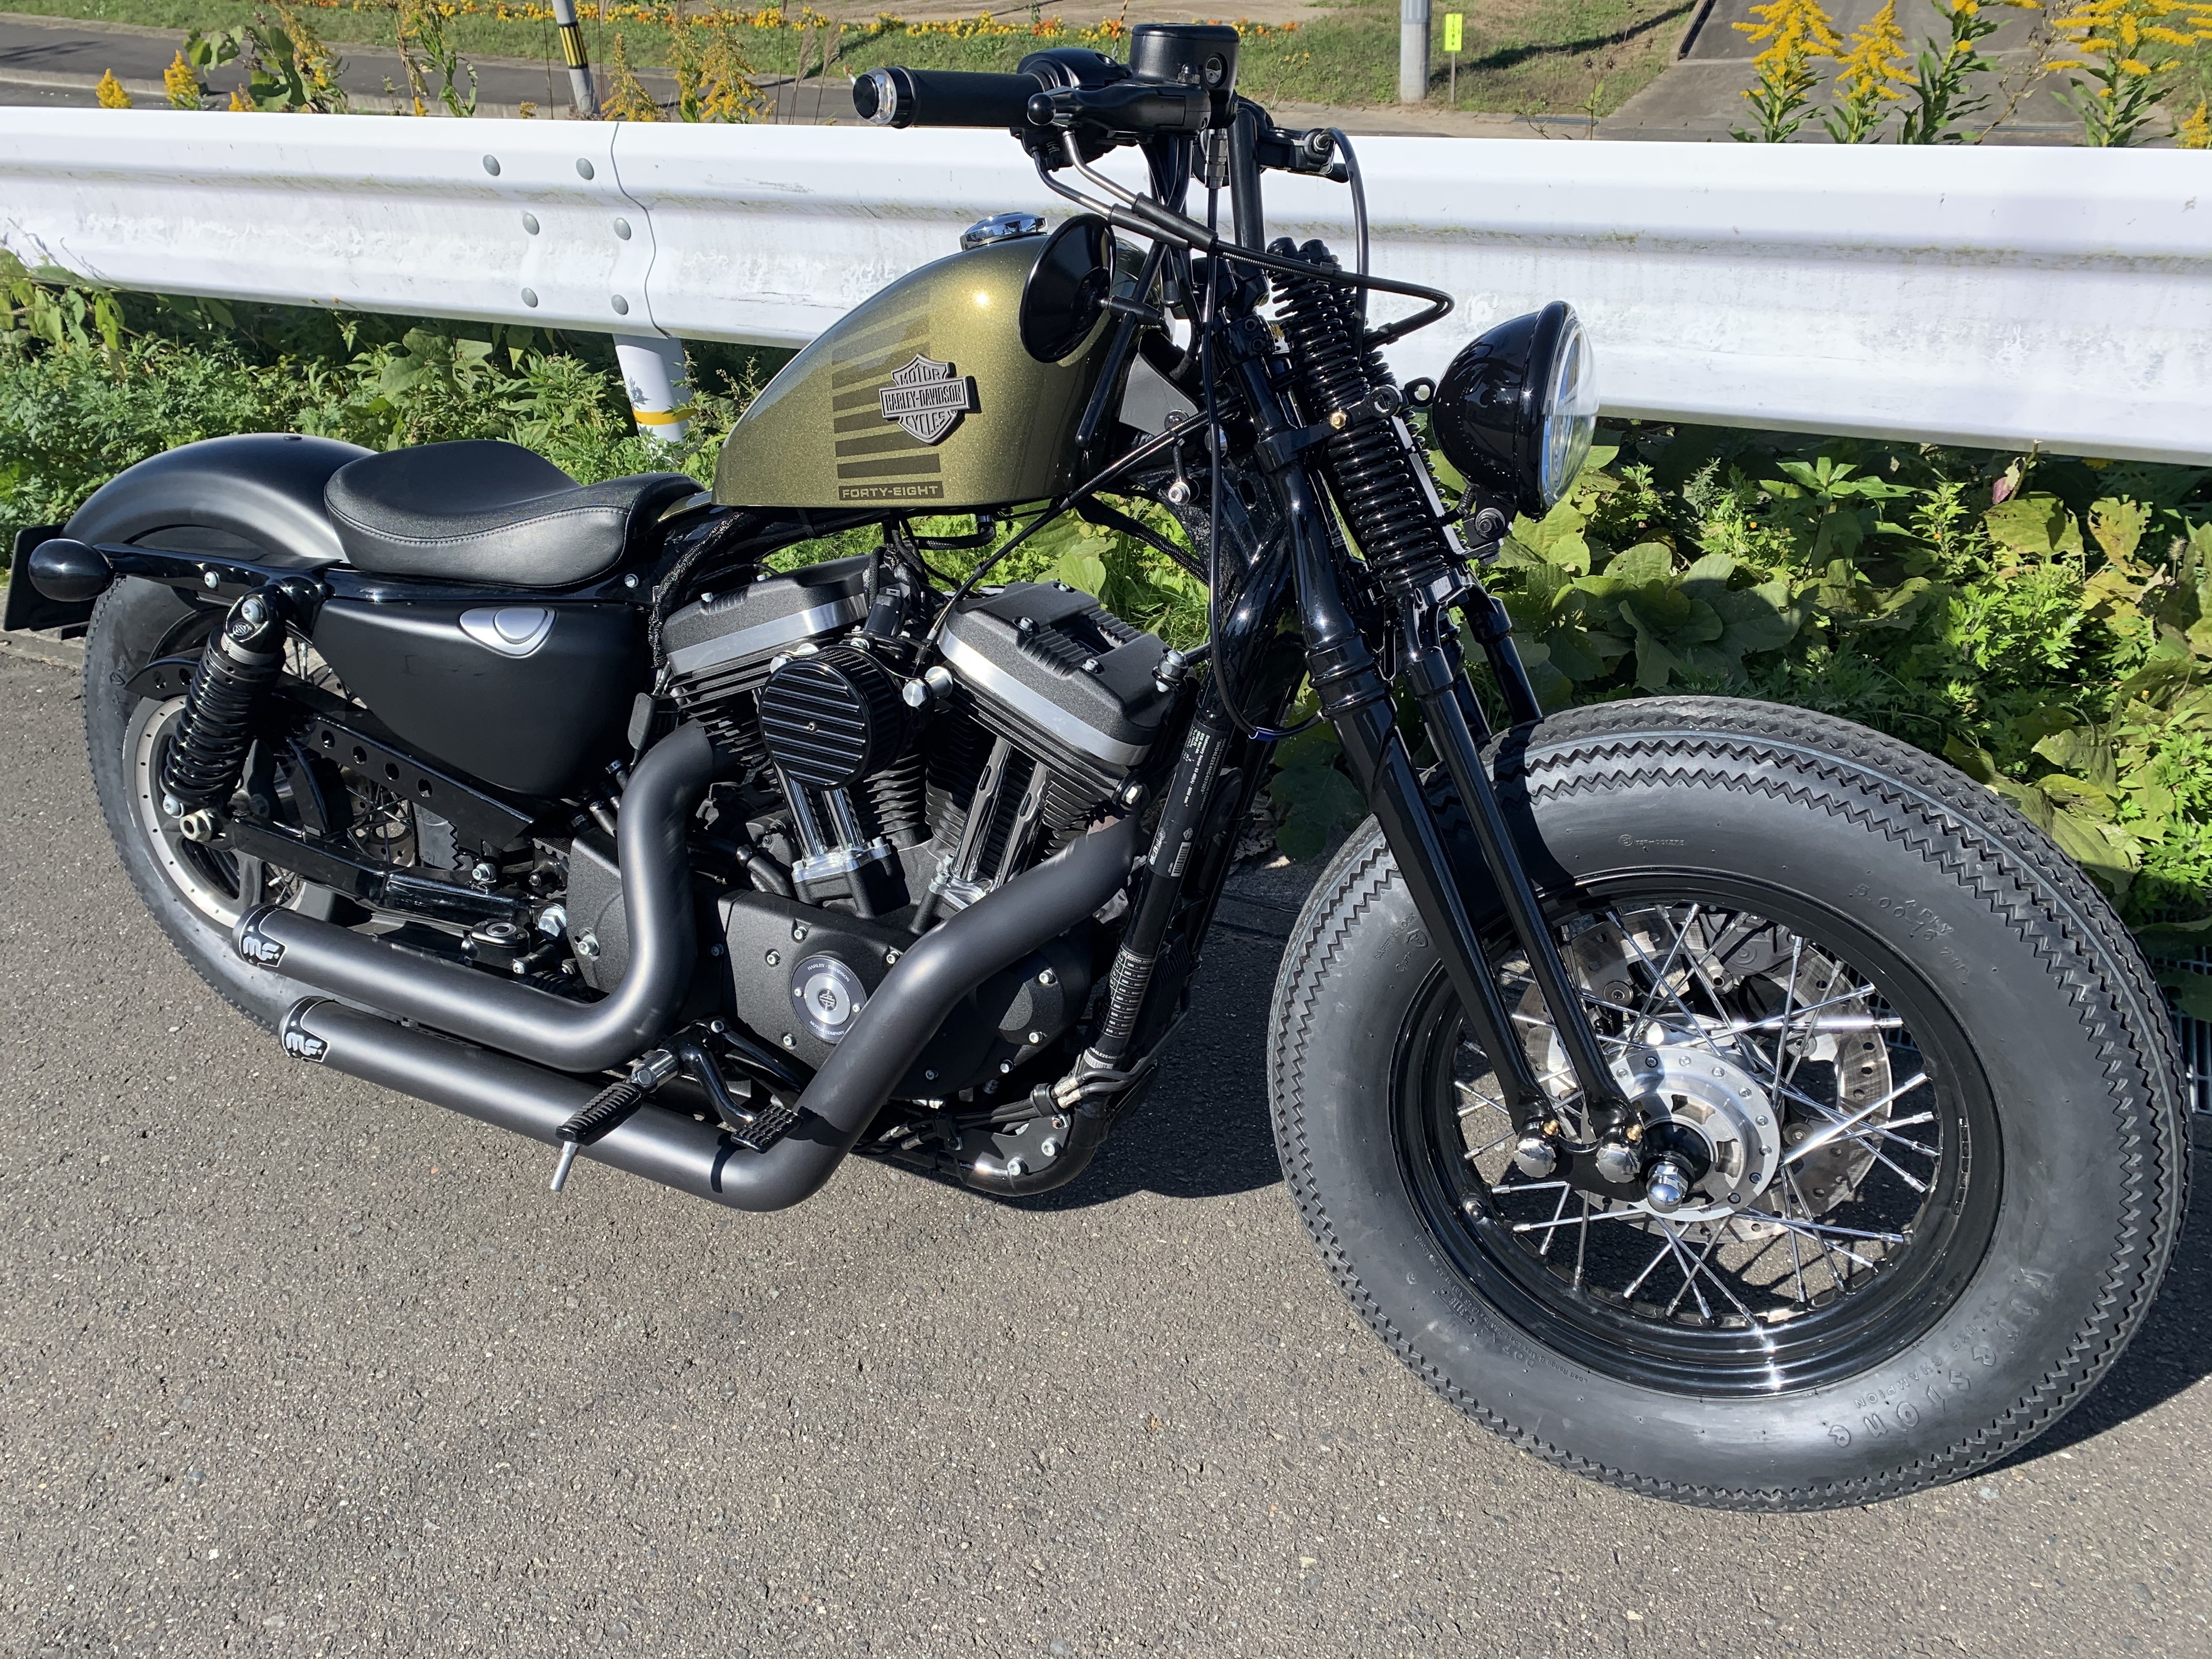 Harley Davidson XL883N スポーツスターアイアンのある生活 | Harley 